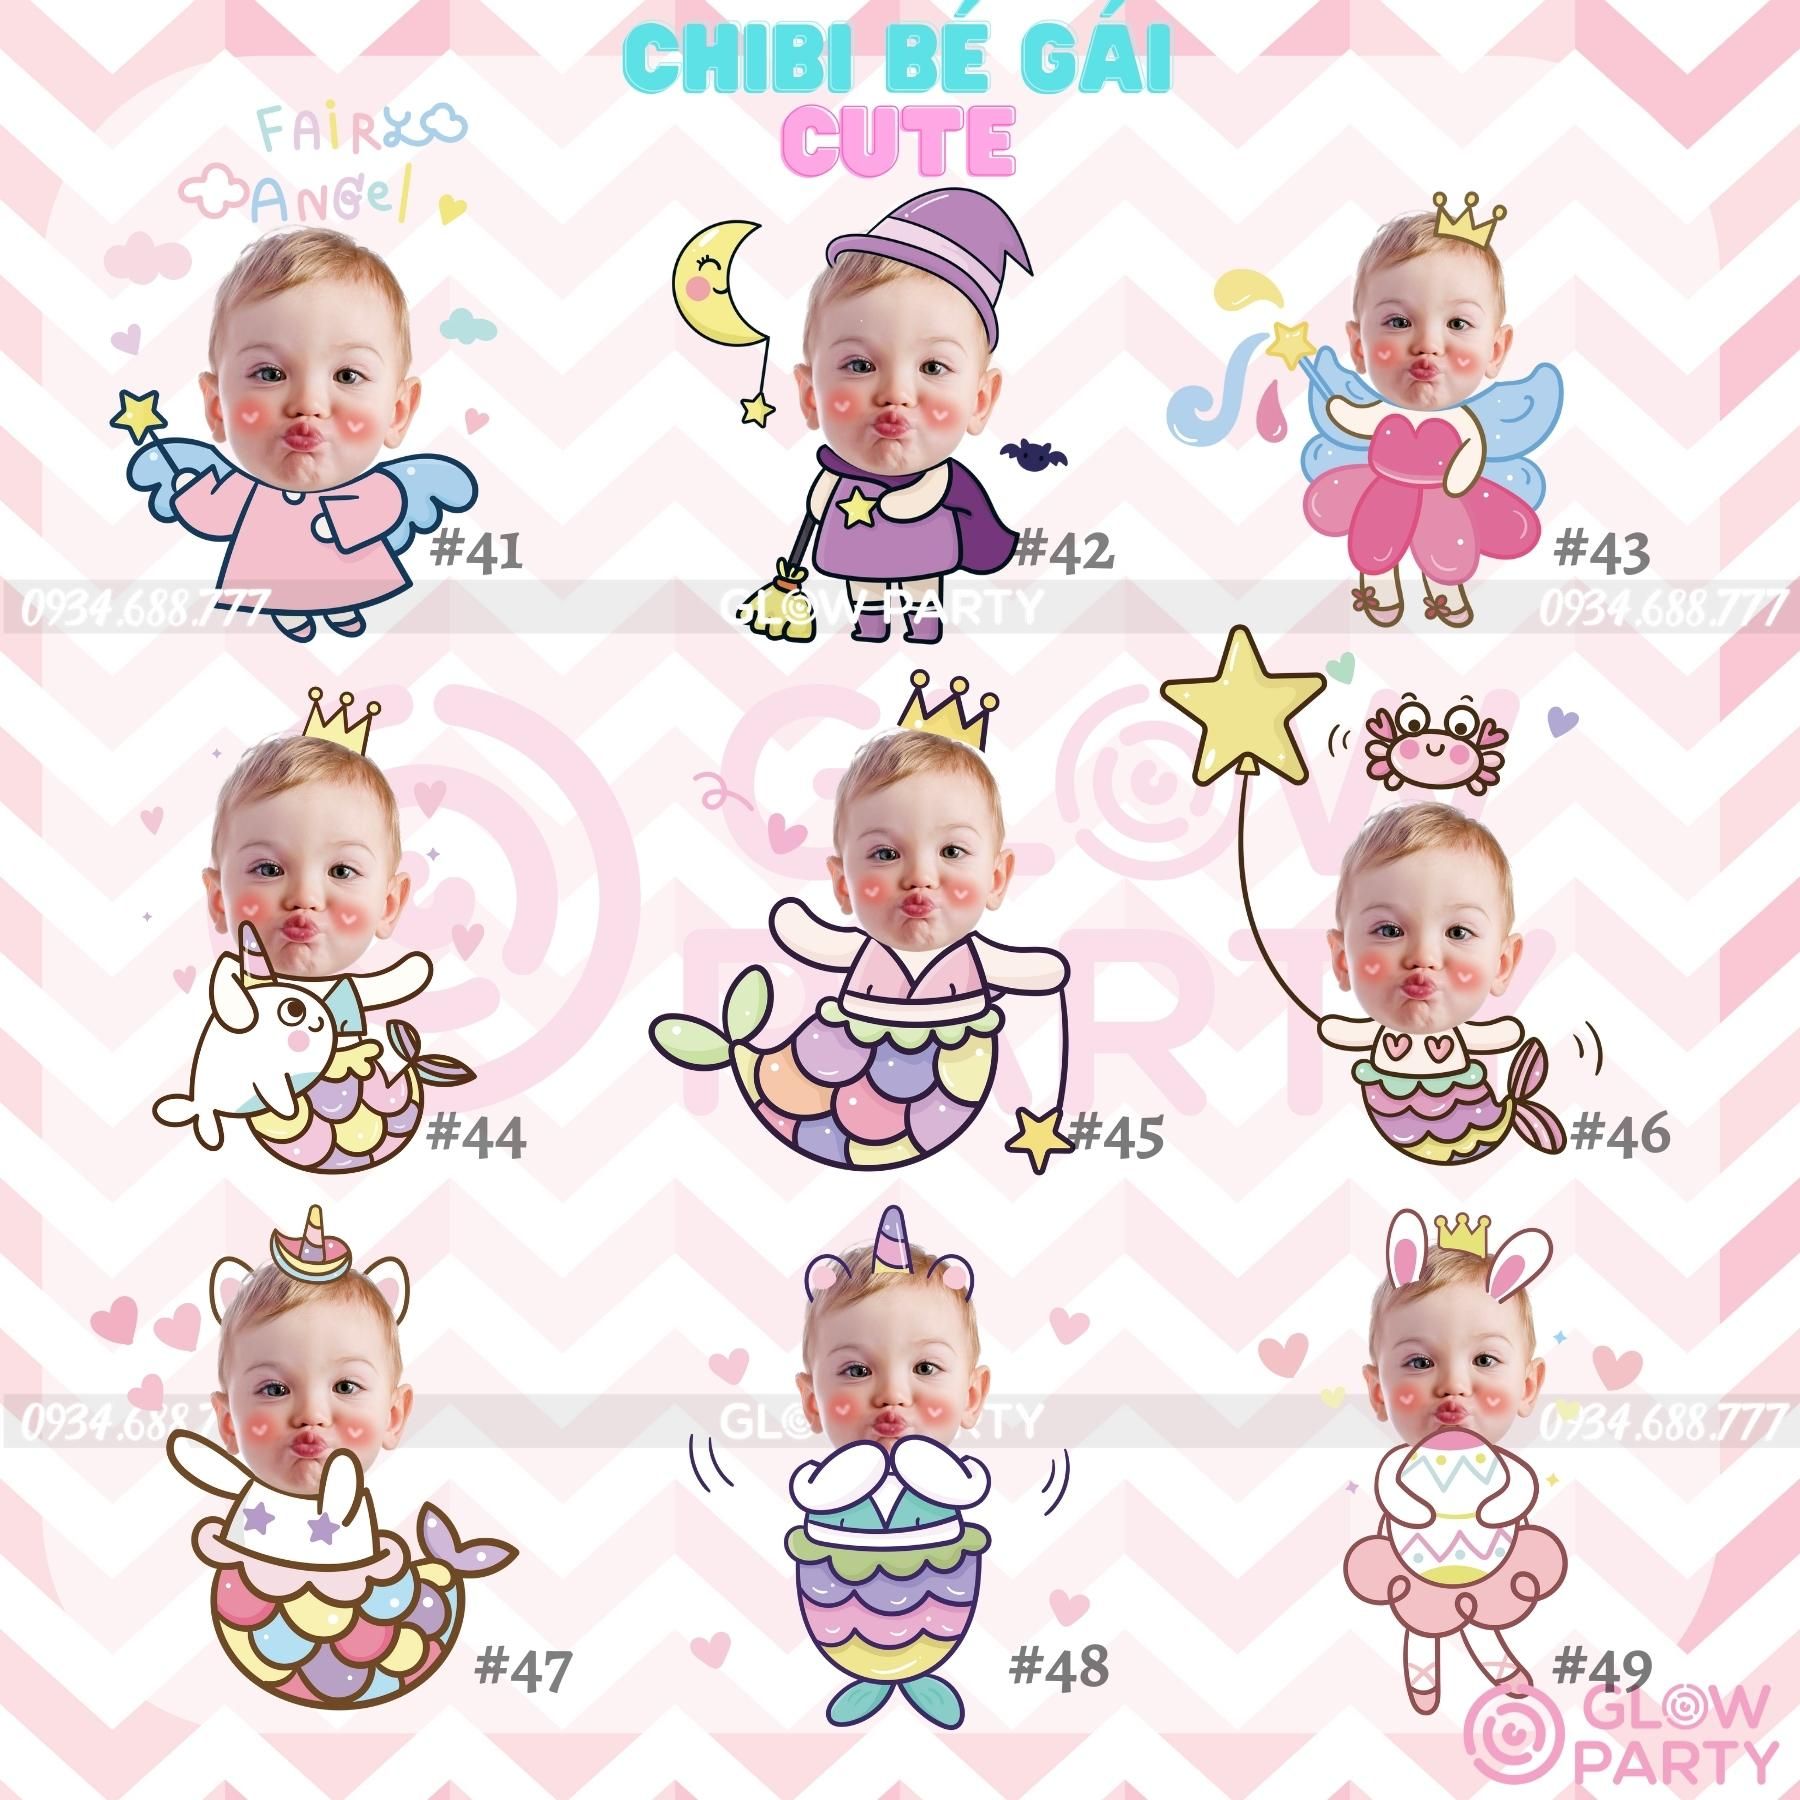 Chibi sinh nhật bé gái cute - Set 1 (chọn mẫu)